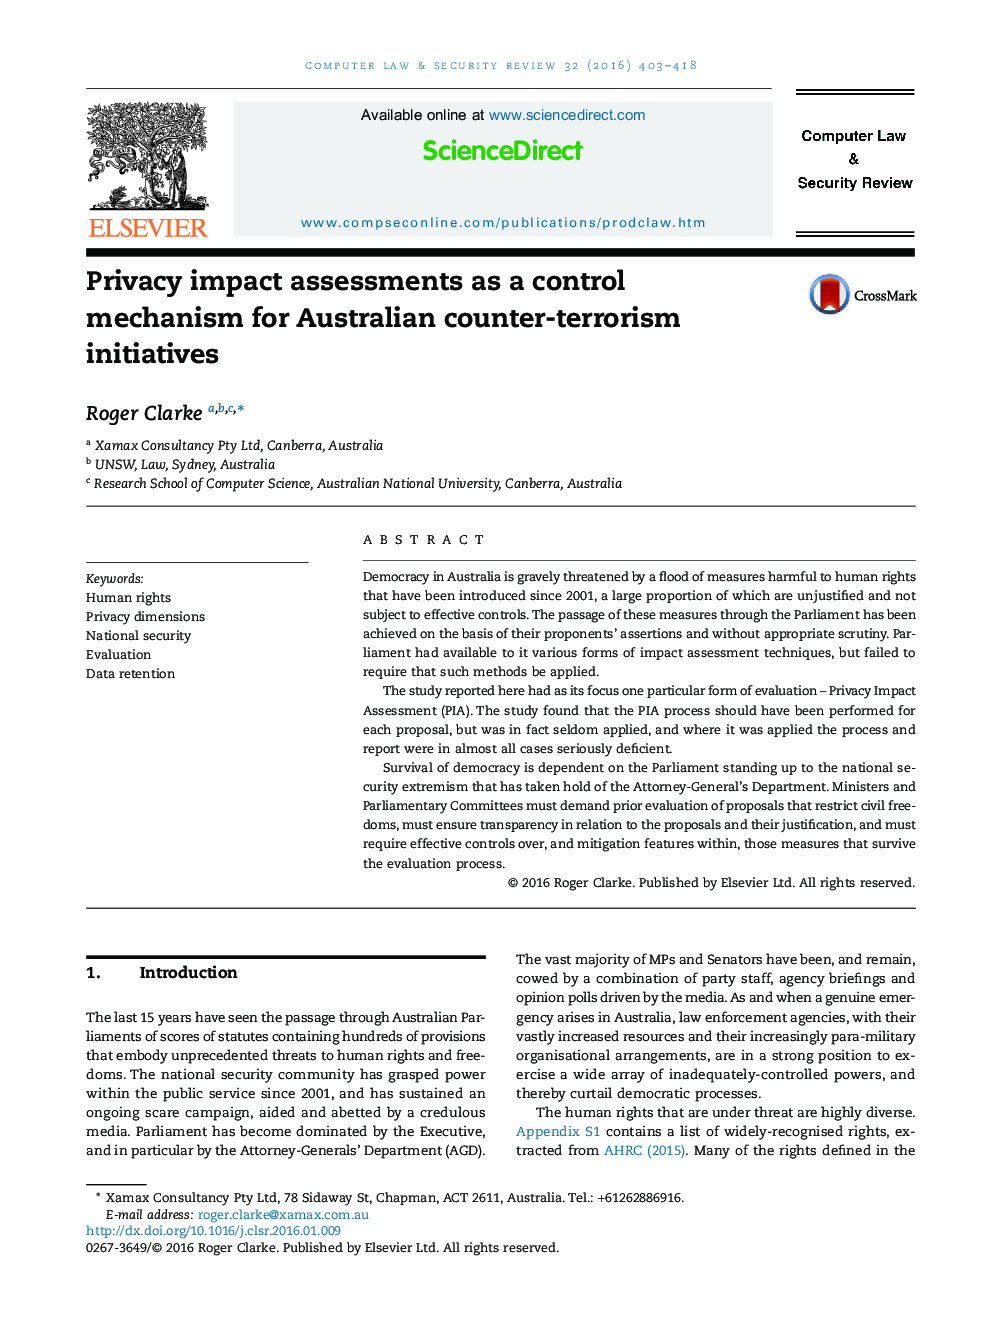 ارزیابی اثرات حریم خصوصی به عنوان یک مکانیسم کنترل برای طرح های مبارزه با تروریسم در استرالیا